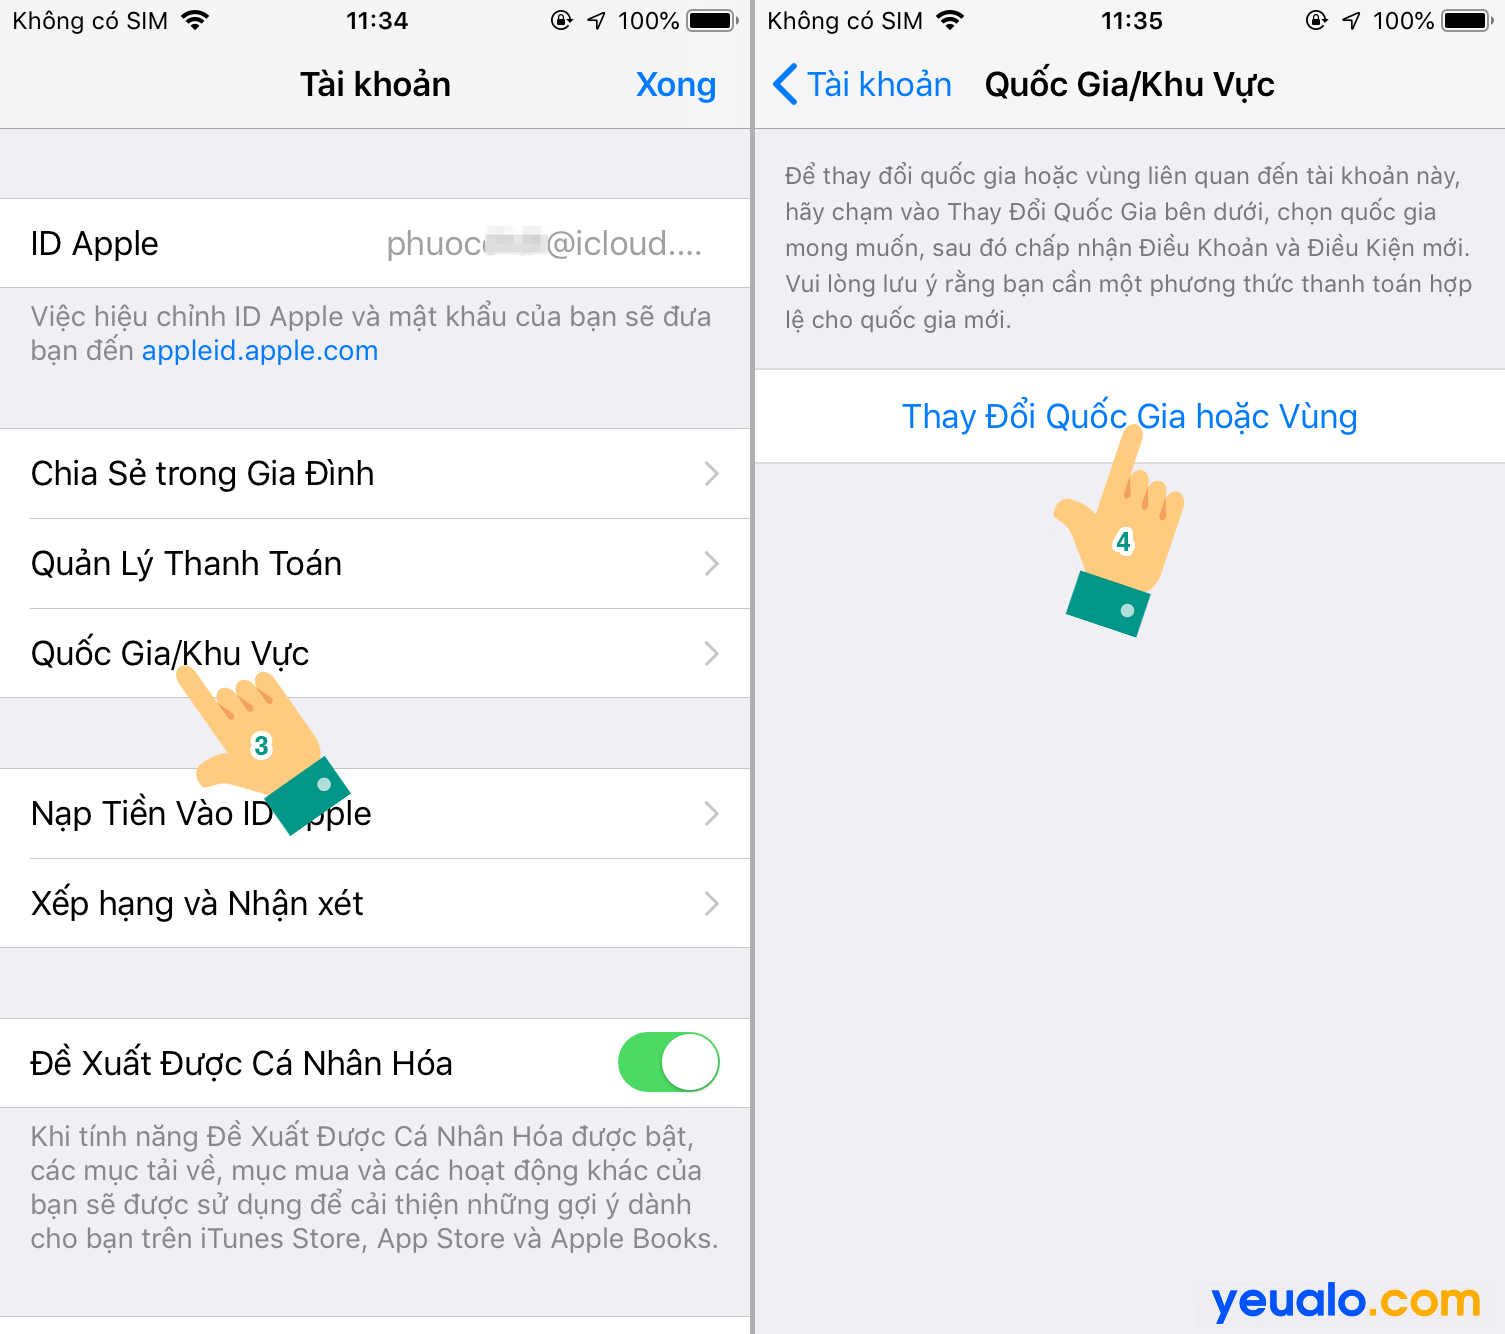 Cách tải Tik Tok Trung Quốc cho iOS iPhone 2